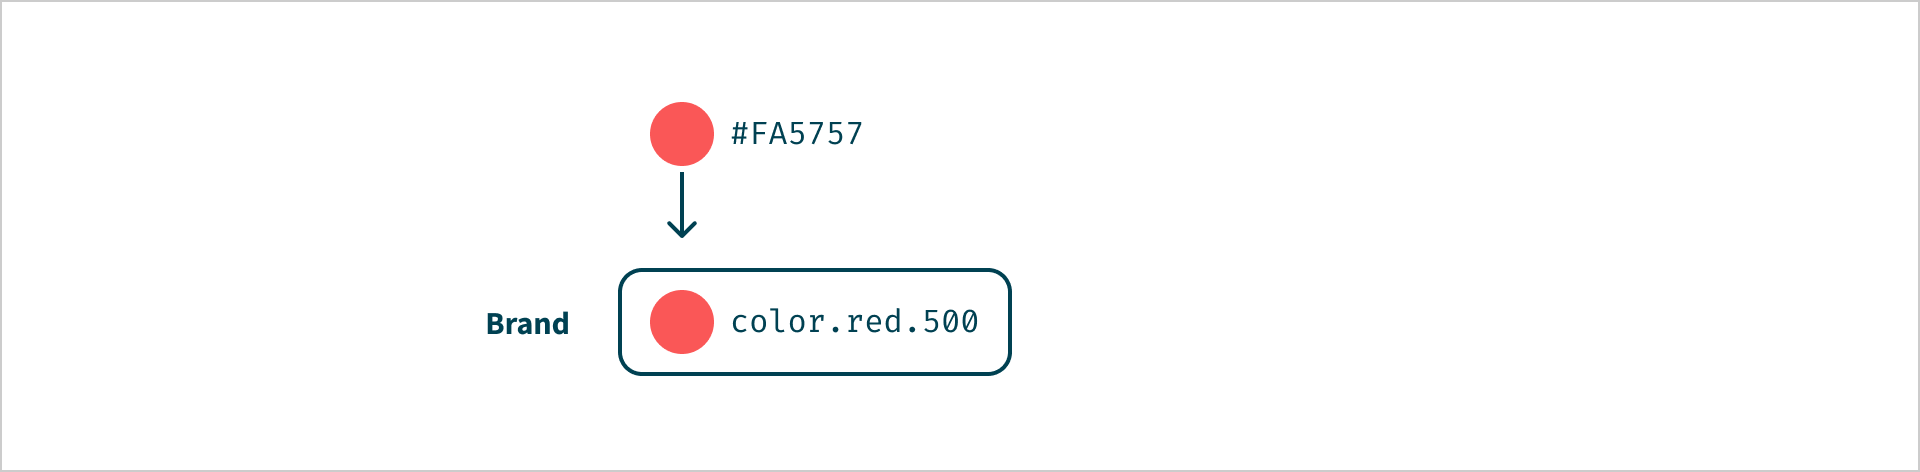 De kleur #FA5757 verwijst naar 'color.red.500' met het label 'Brand'.